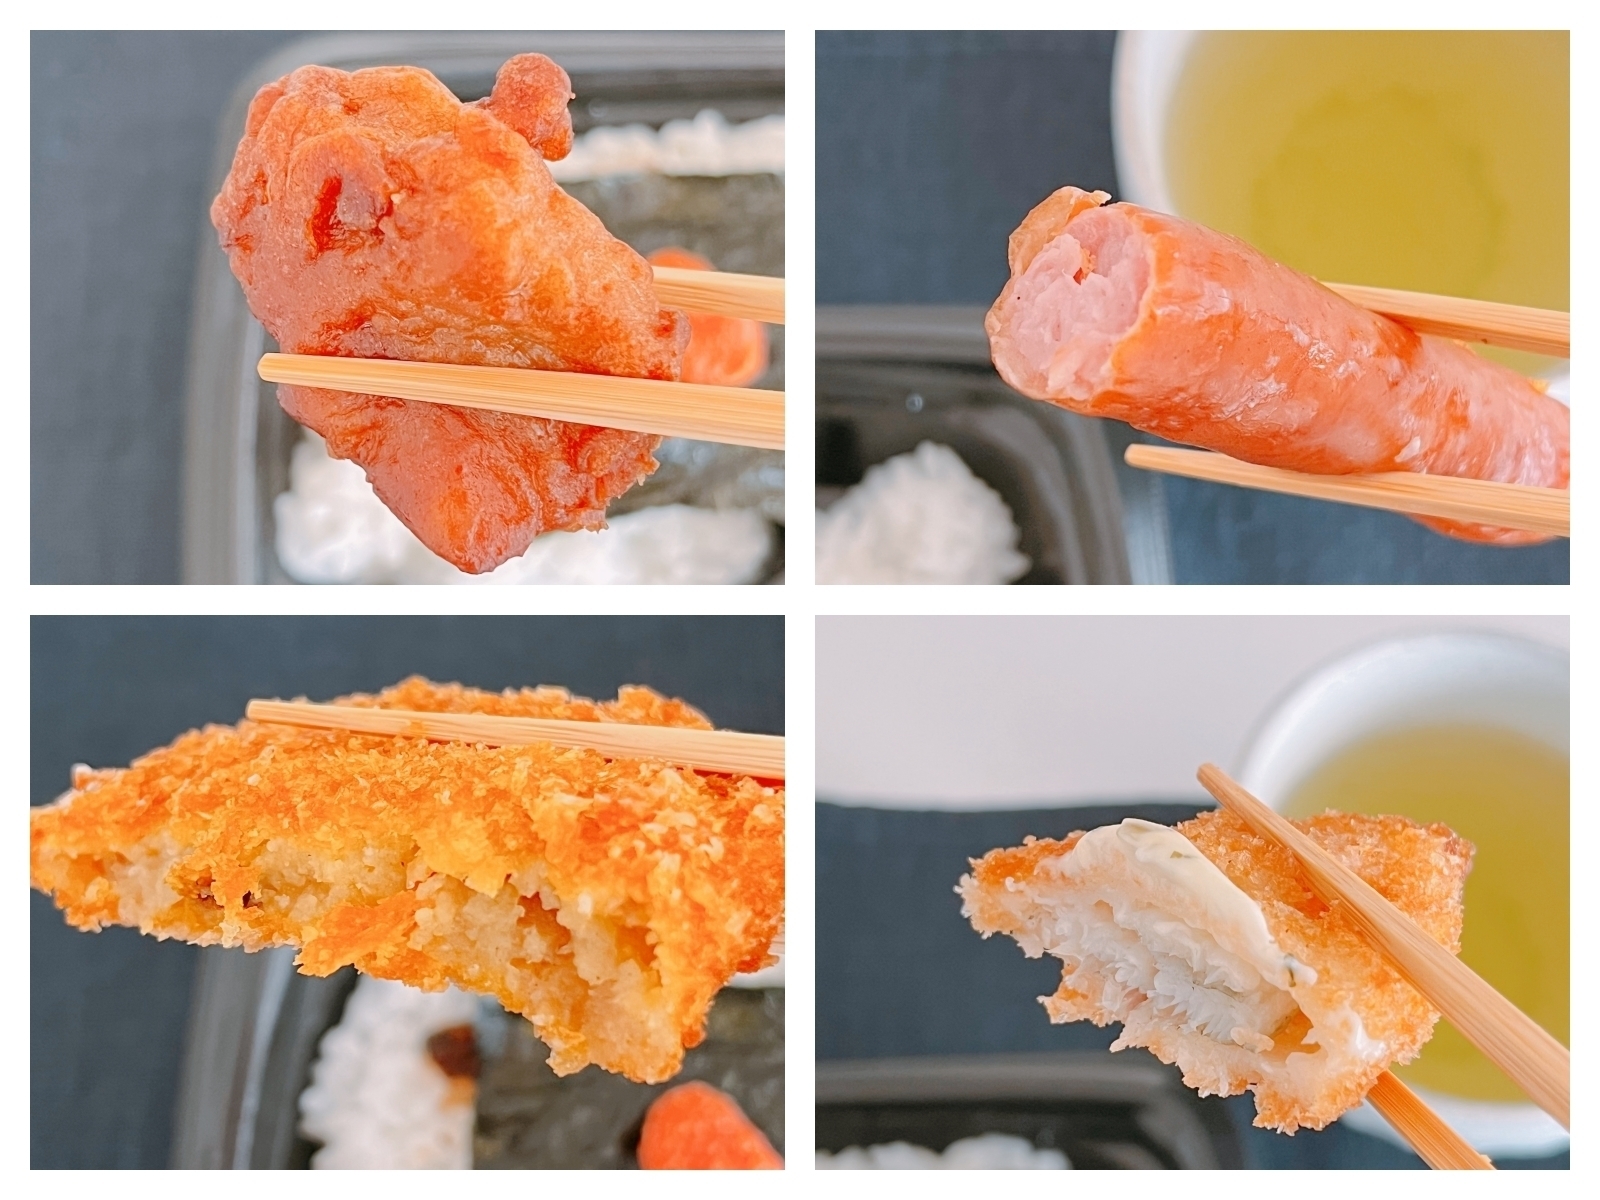 箸でつまんだ揚げた魚の4コマ写真。食事の風景を示している。